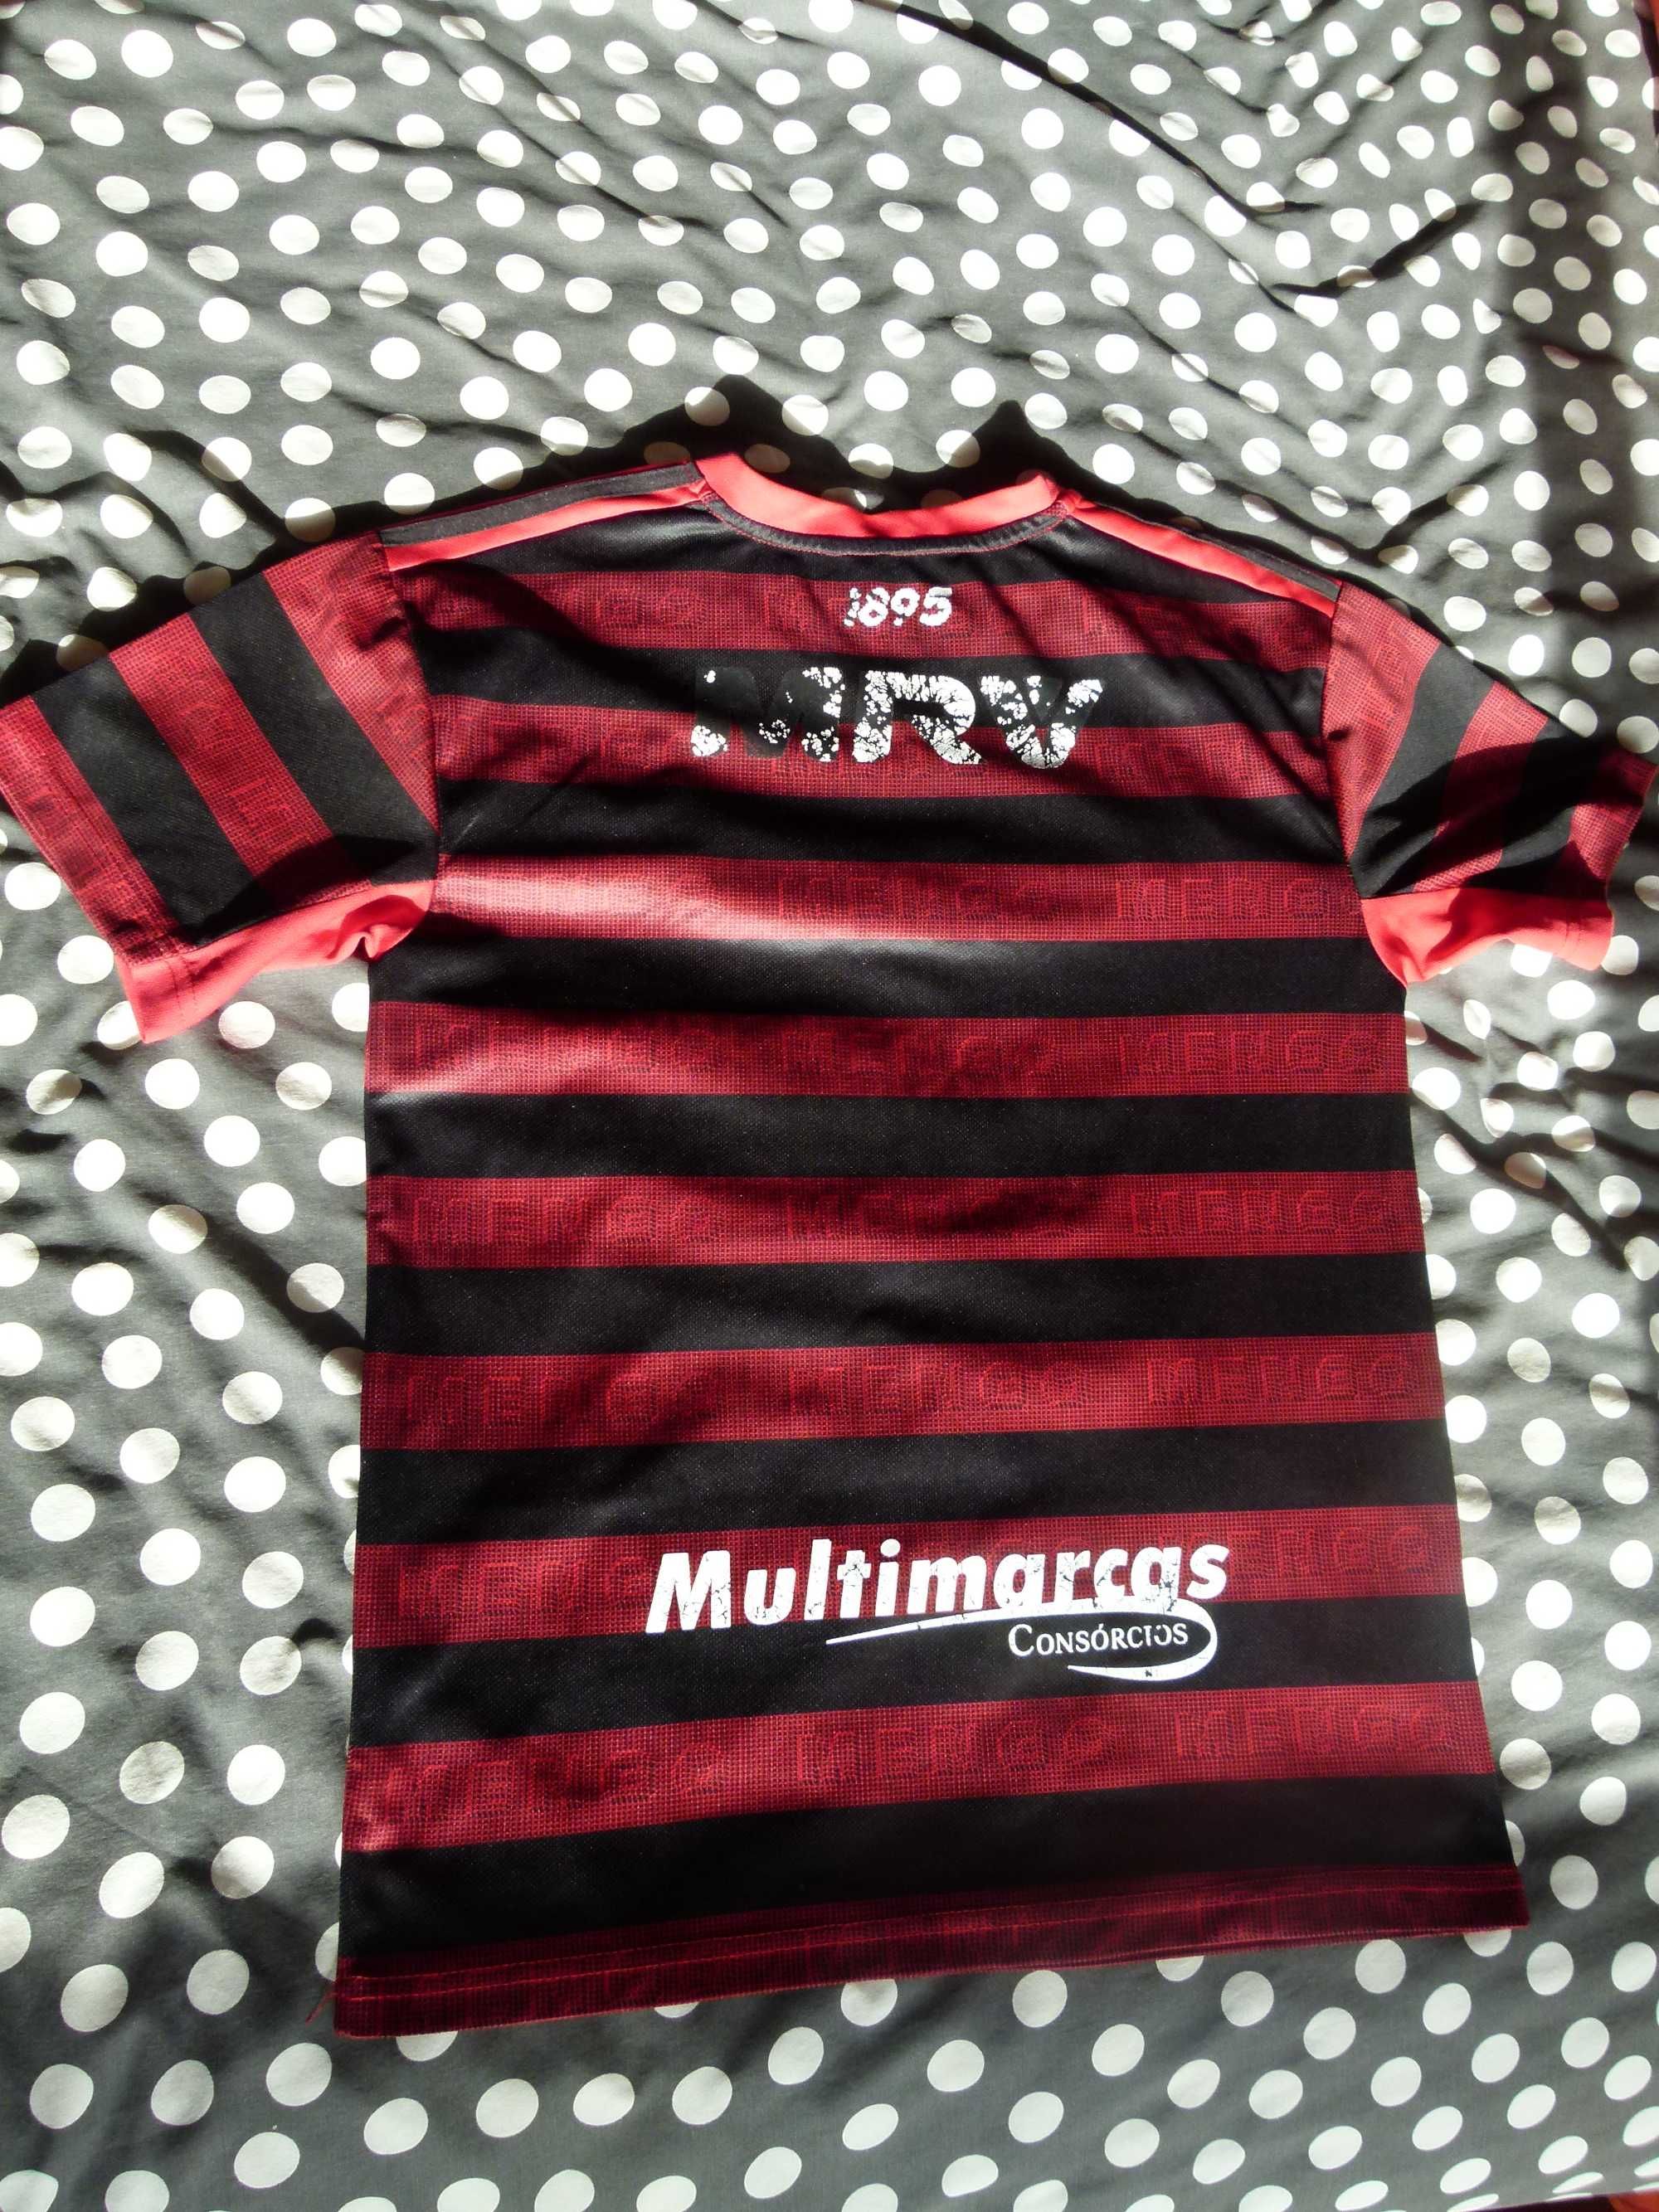 Camisola futebol Flamengo (Brasil) Tam M / L